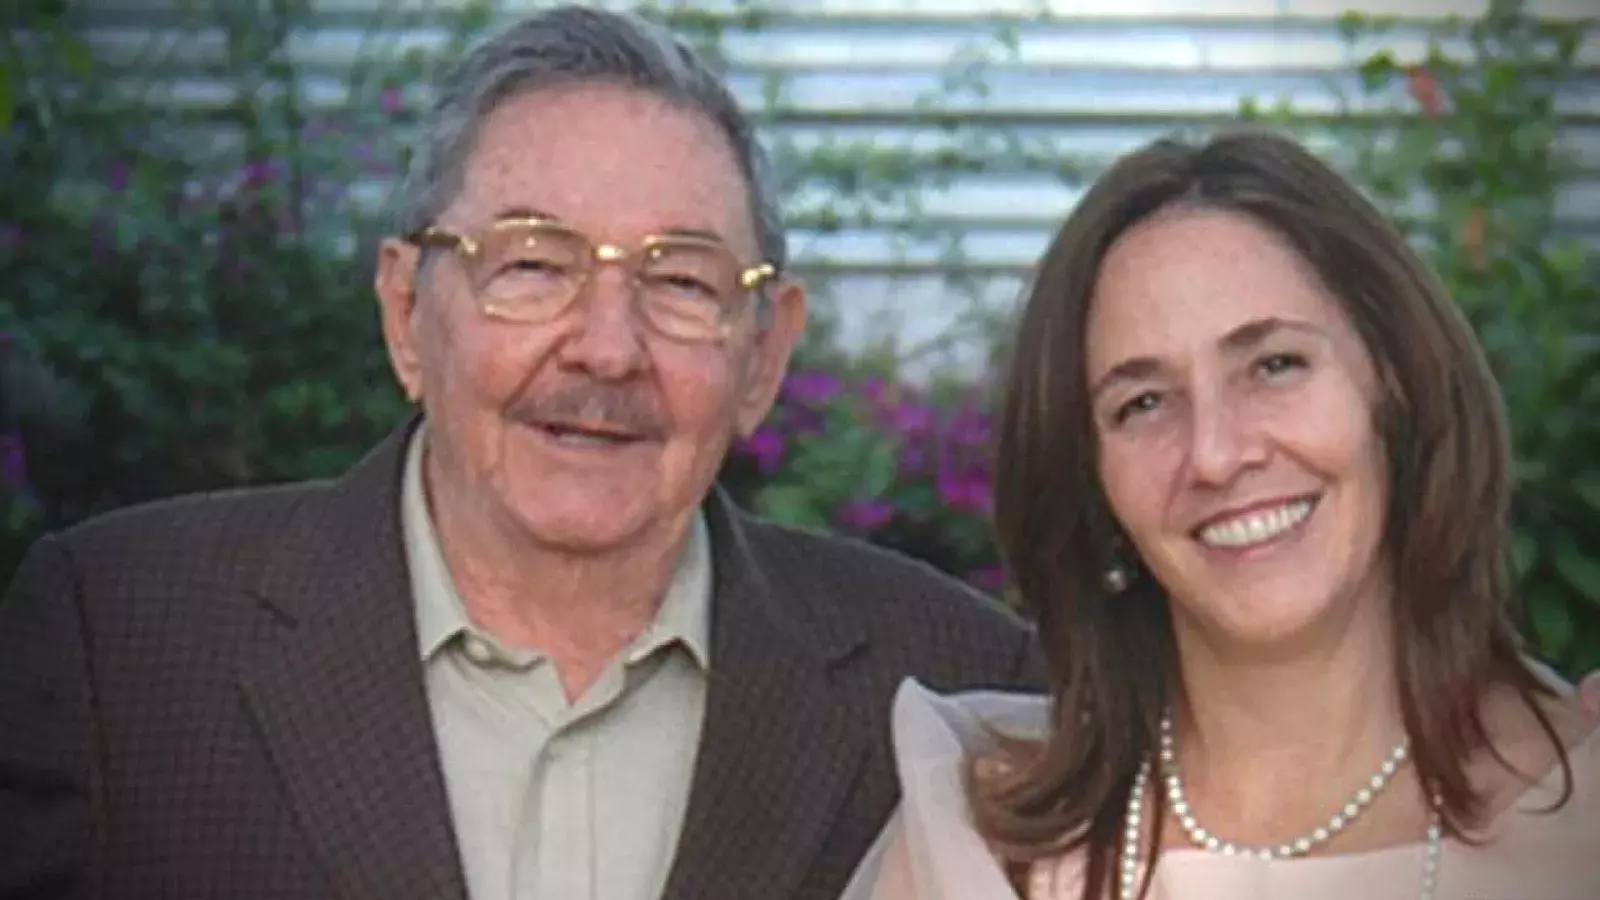 Raul Castro y Mariela